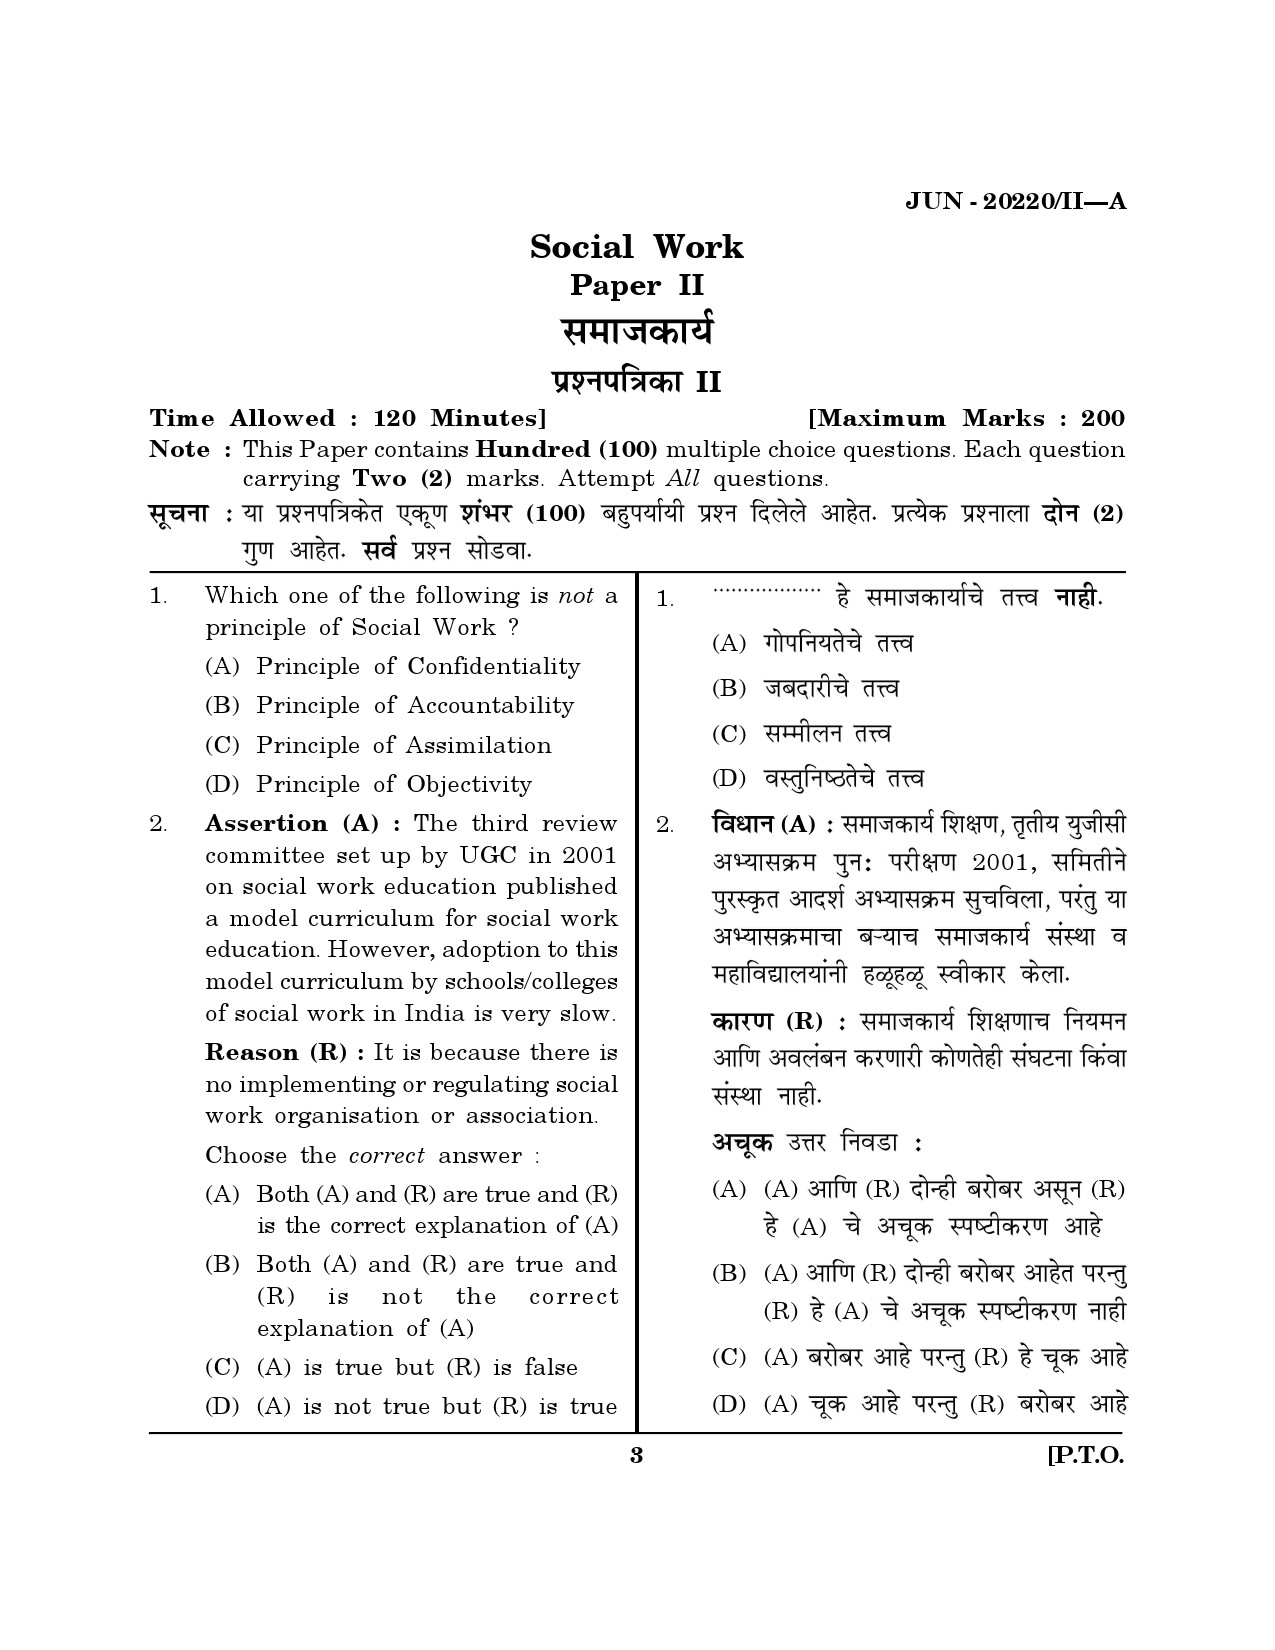 Maharashtra SET Social Work Question Paper II June 2020 2